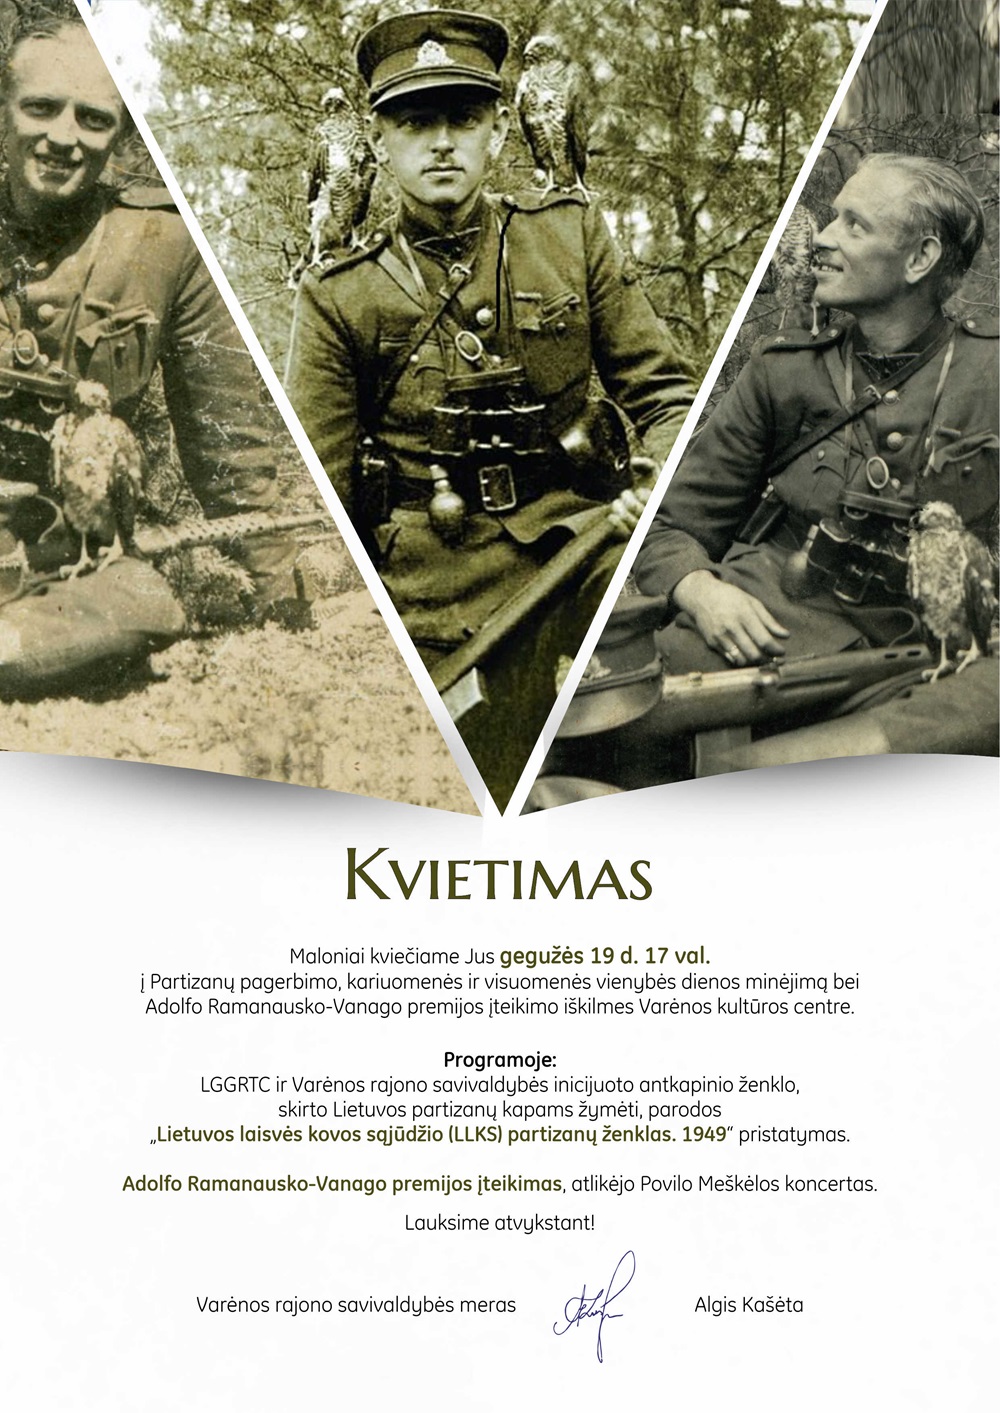 Varėnoje bus pristatytas partizanų atminimui skirtas antkapinis ženklas | genocid.lt nuotr.